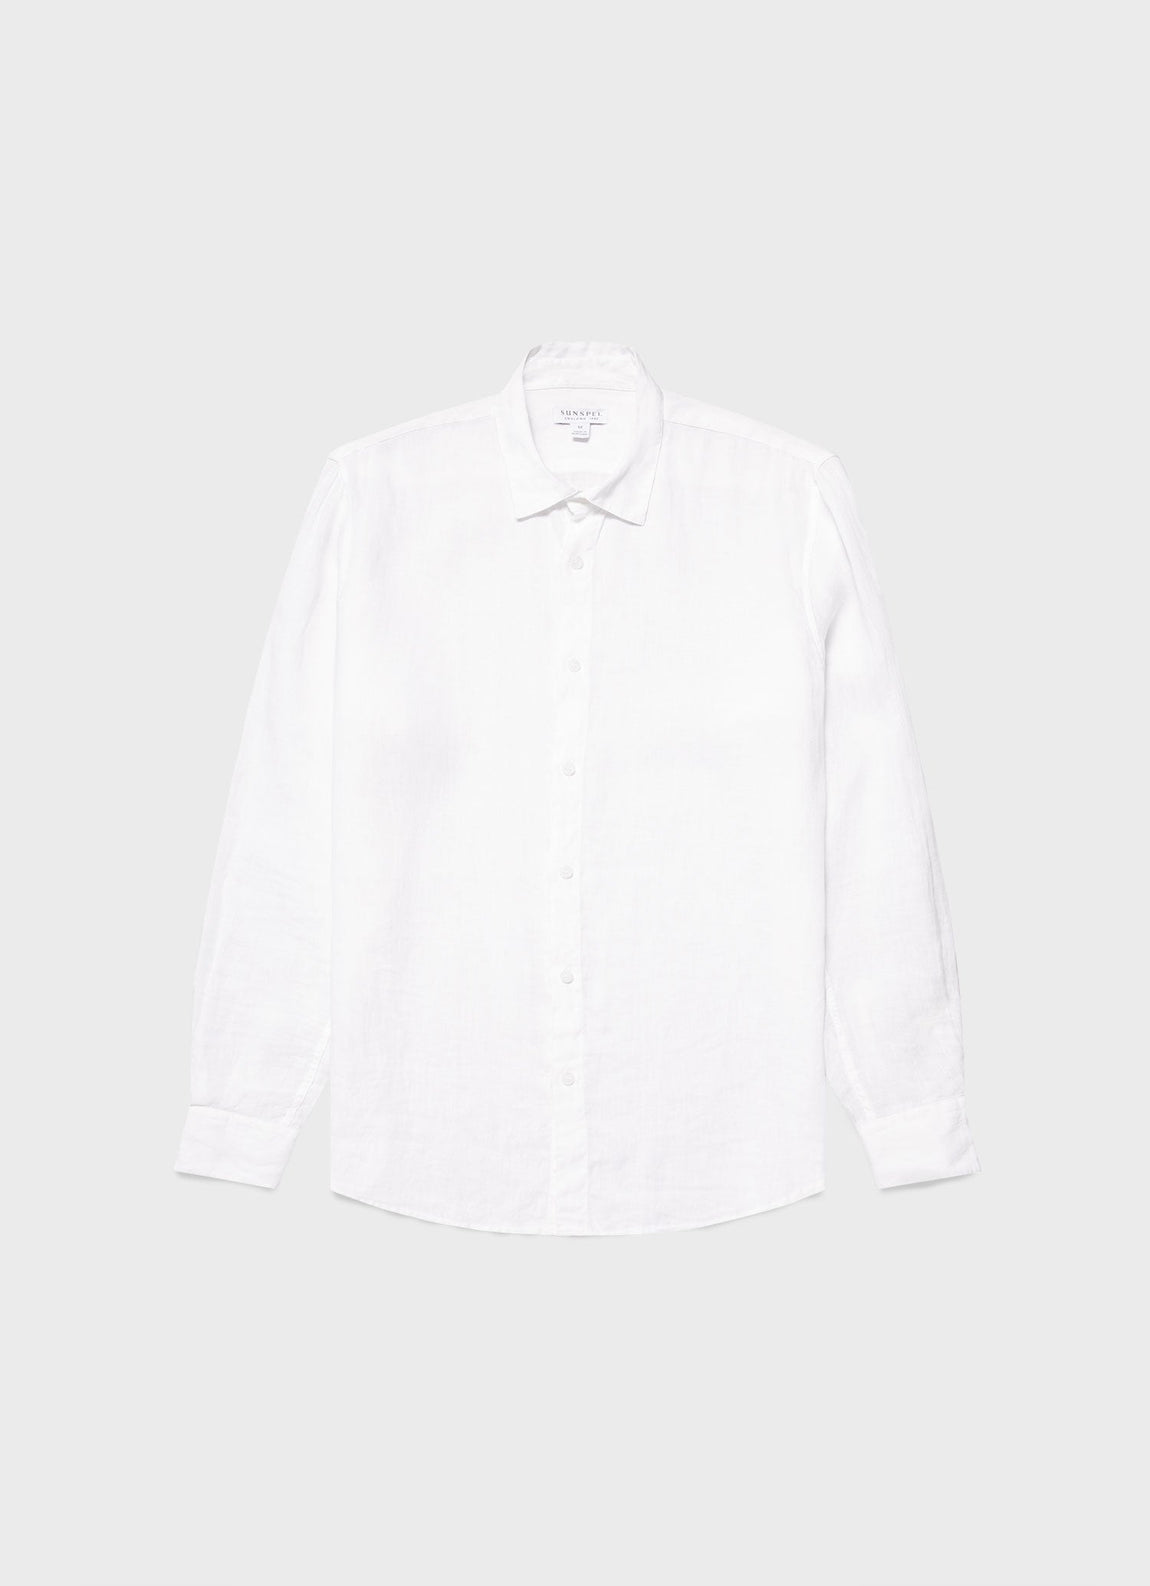 Men's Linen Shirt in White